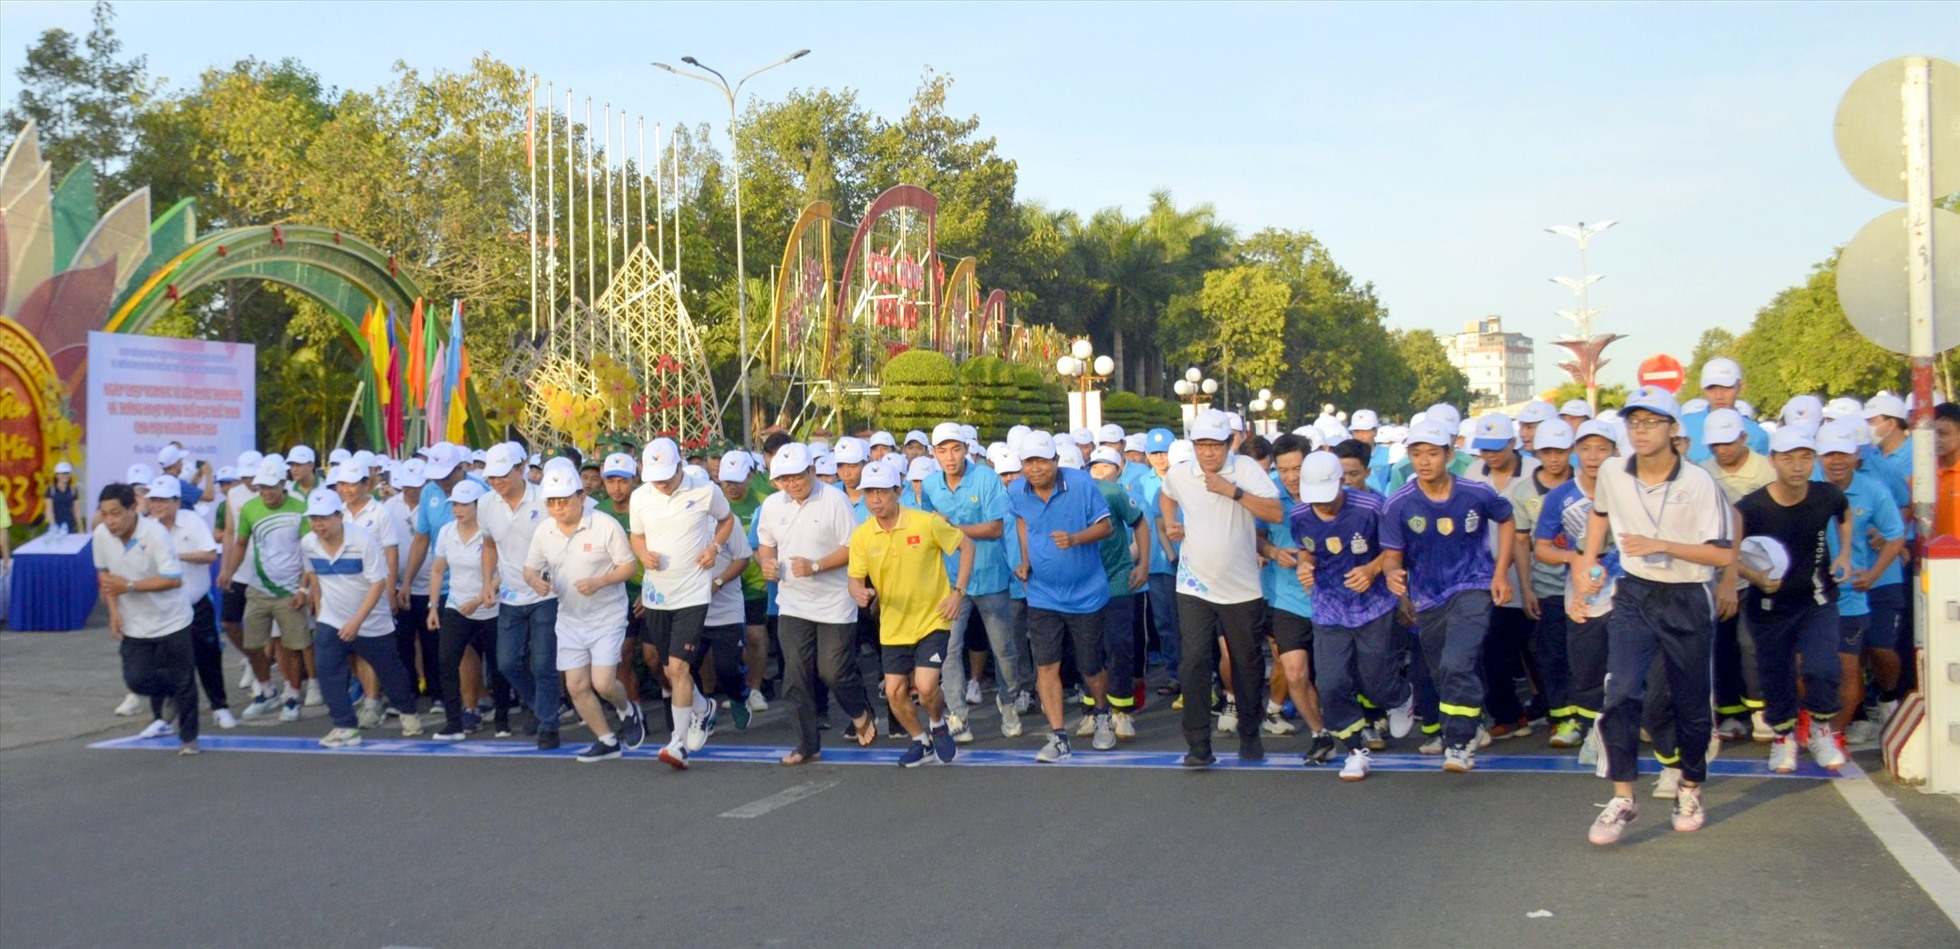 Cán bộ, công nhân viên chưc người lao động tỉnh Bạc Liêu tham gia chạy vì sức khỏe. Ảnh: Nhật Hồ